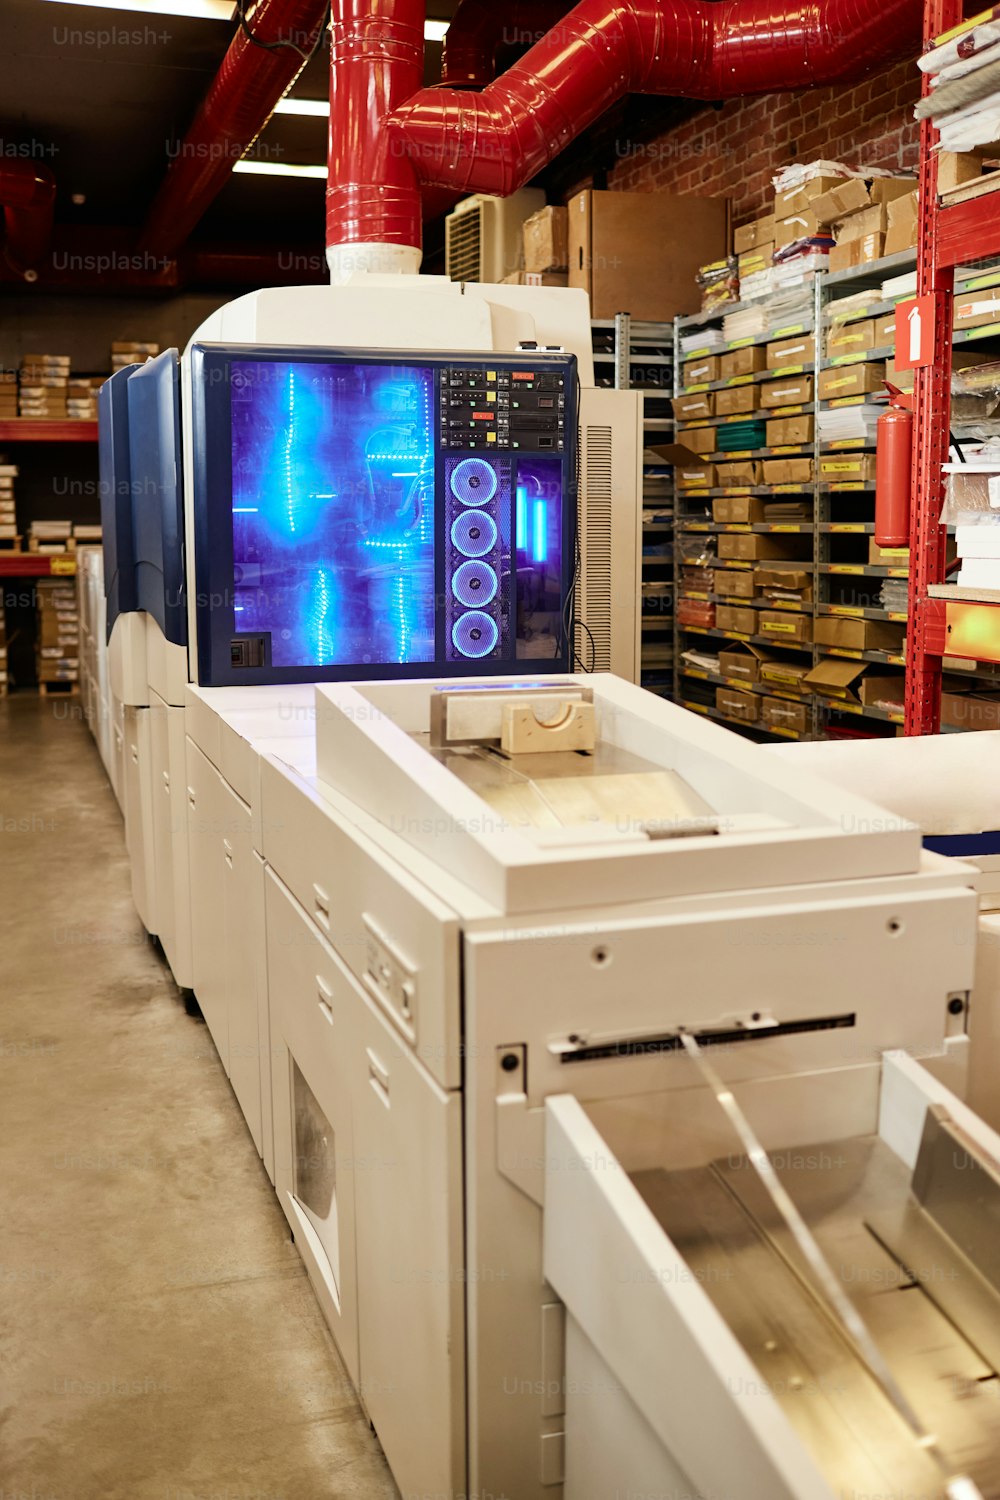 Immagine di sfondo del laboratorio della fabbrica di stampa con particolare attenzione alla macchina da stampa incandescente